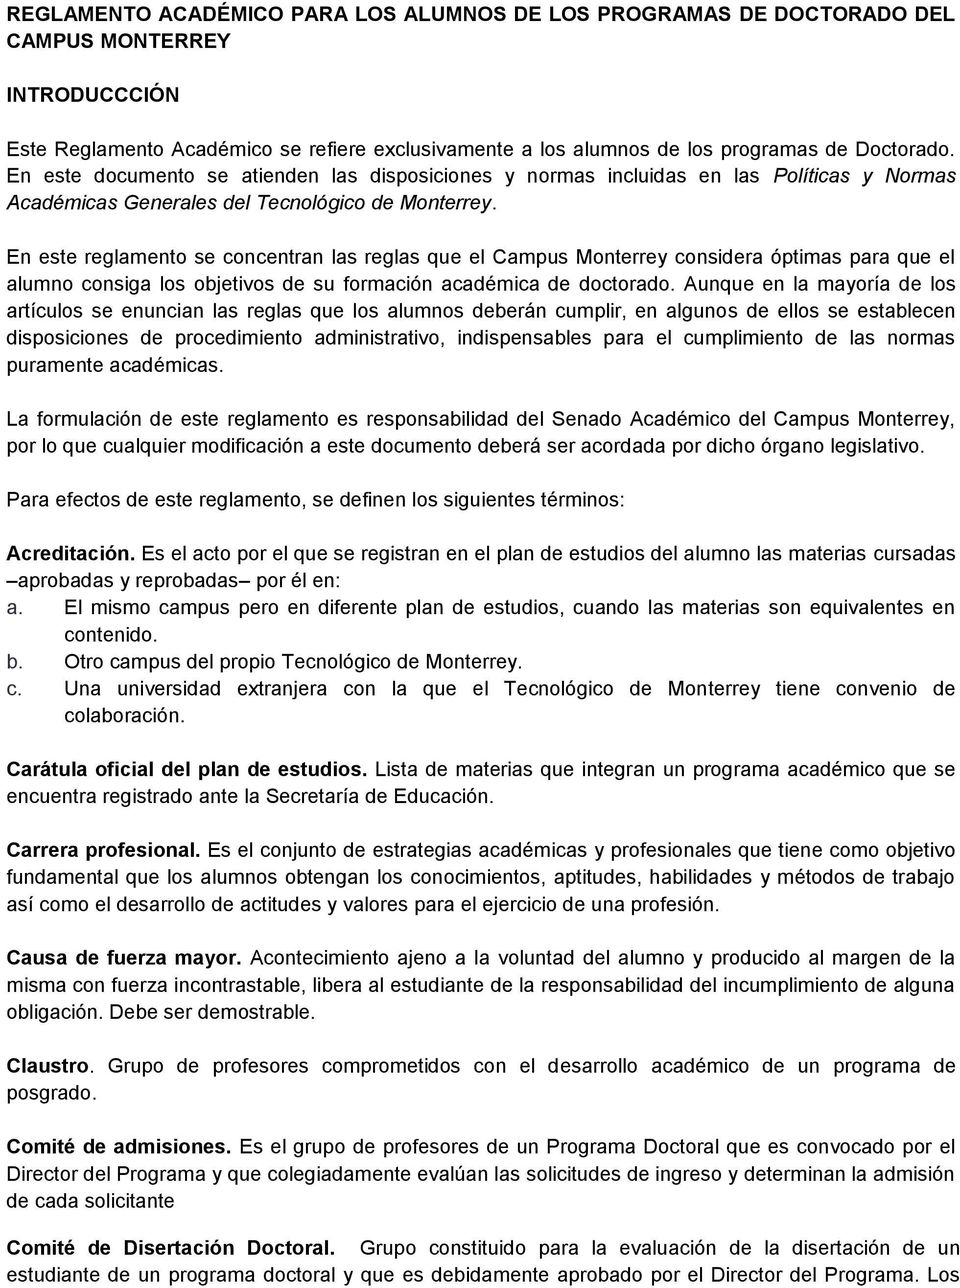 En este reglamento se concentran las reglas que el Campus Monterrey considera óptimas para que el alumno consiga los objetivos de su formación académica de doctorado.